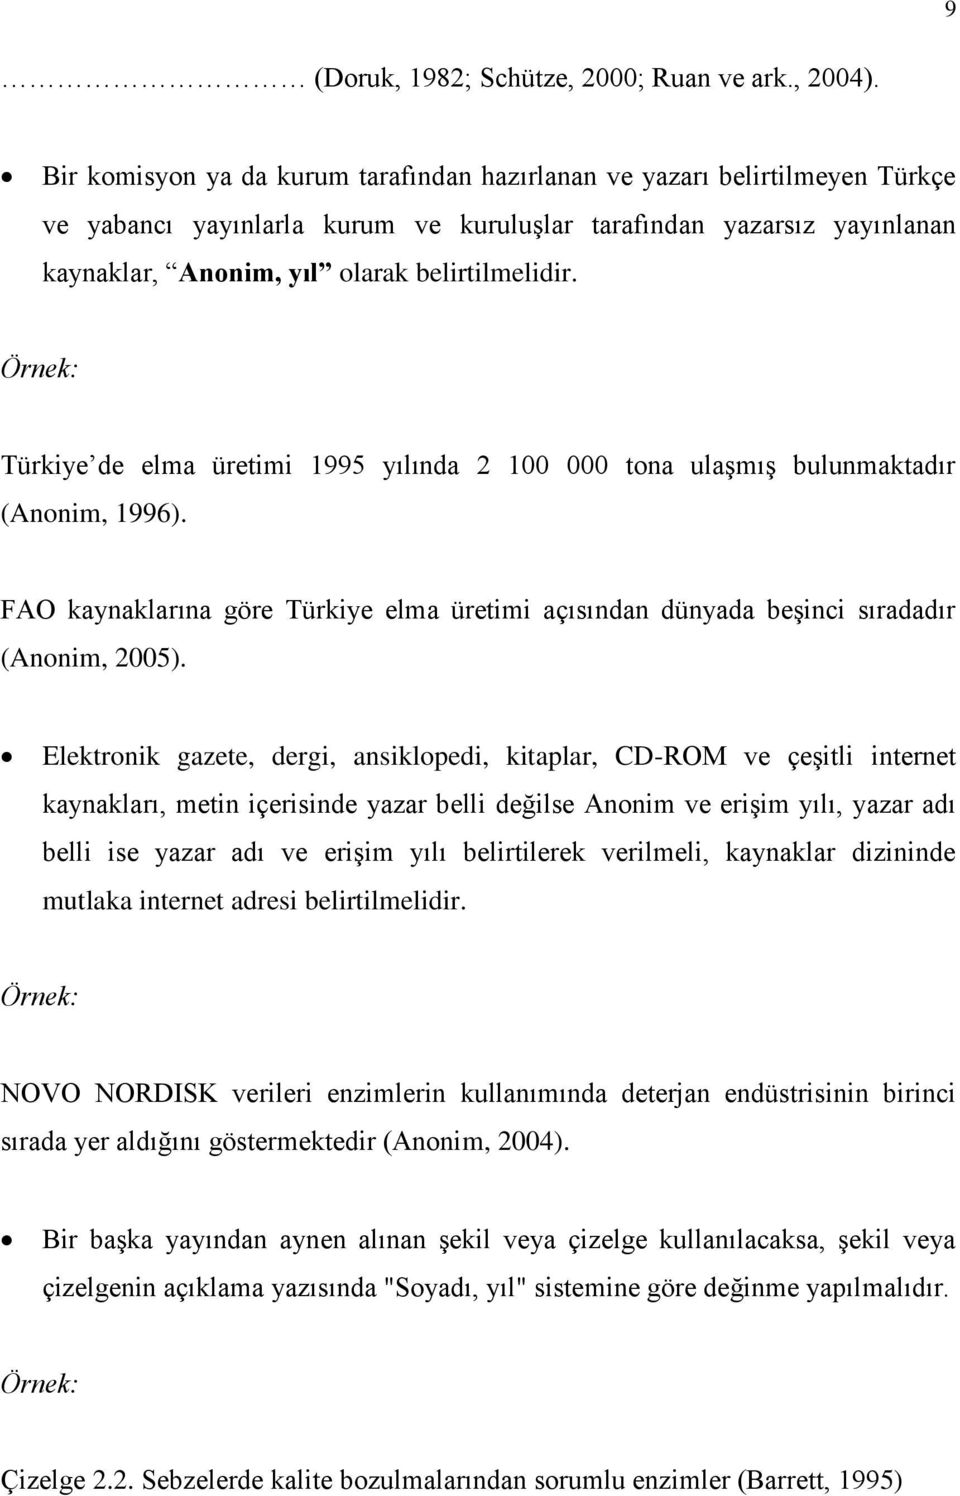 Örnek: Türkiye de elma üretimi 1995 yılında 2 100 000 tona ulaşmış bulunmaktadır (Anonim, 1996). FAO kaynaklarına göre Türkiye elma üretimi açısından dünyada beşinci sıradadır (Anonim, 2005).